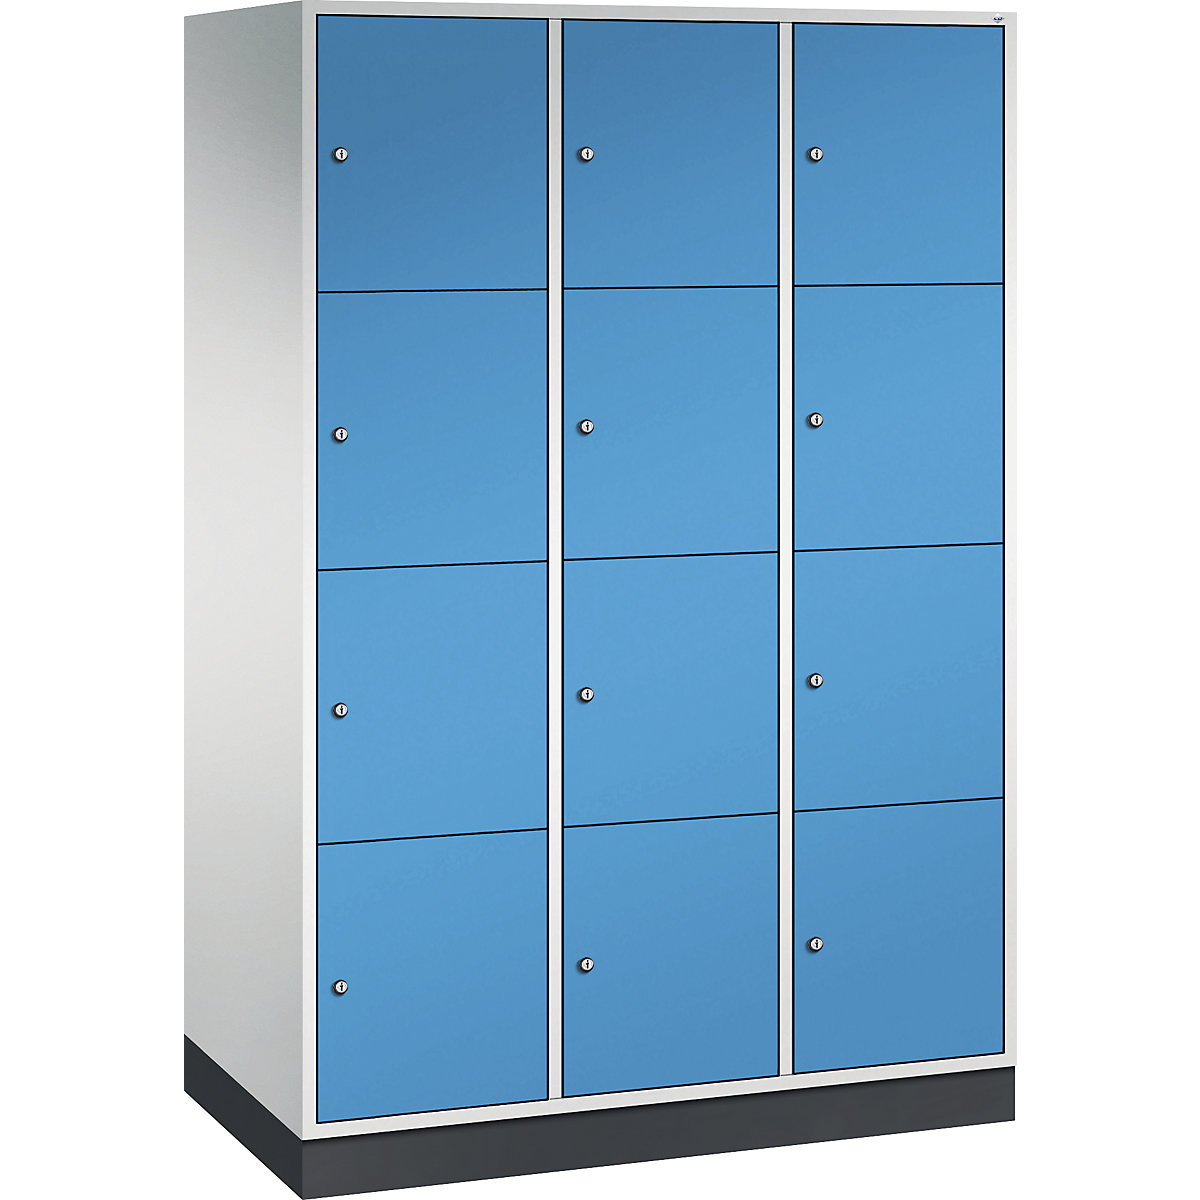 Vestiaire multicases en acier INTRO, casiers hauteur 435 mm – C+P, l x p 1220 x 600 mm, 12 casiers, corps gris clair, portes bleu clair-7